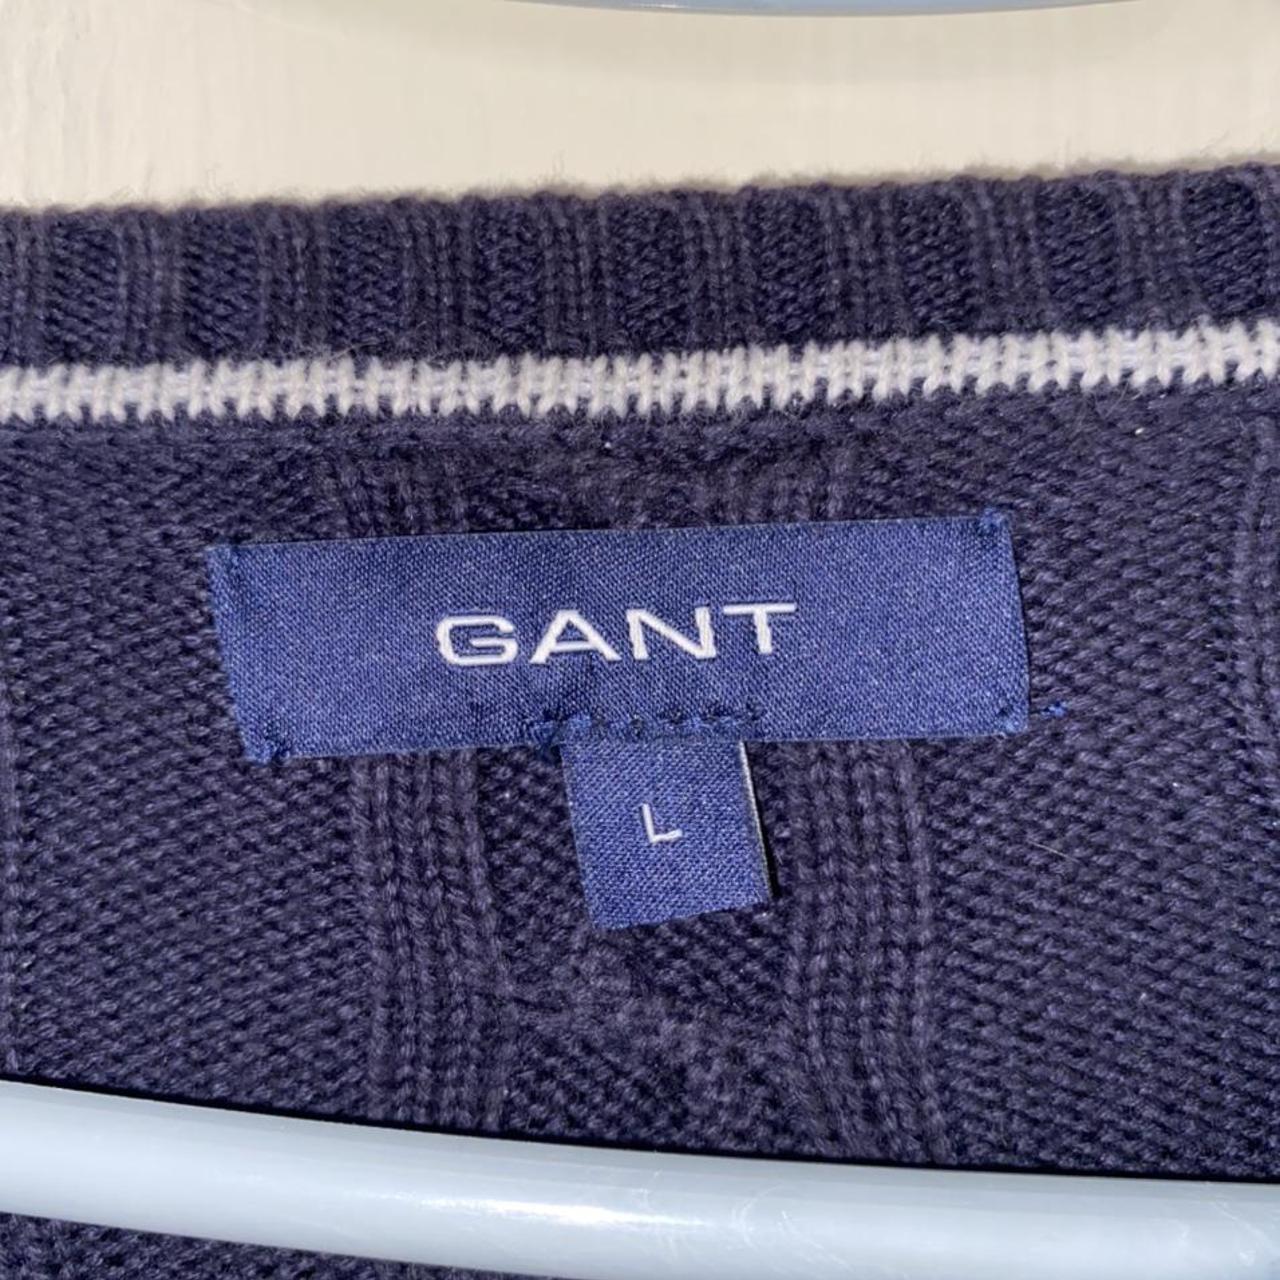 Product Image 2 - Vintage Gant Sweater Jumper 

Size